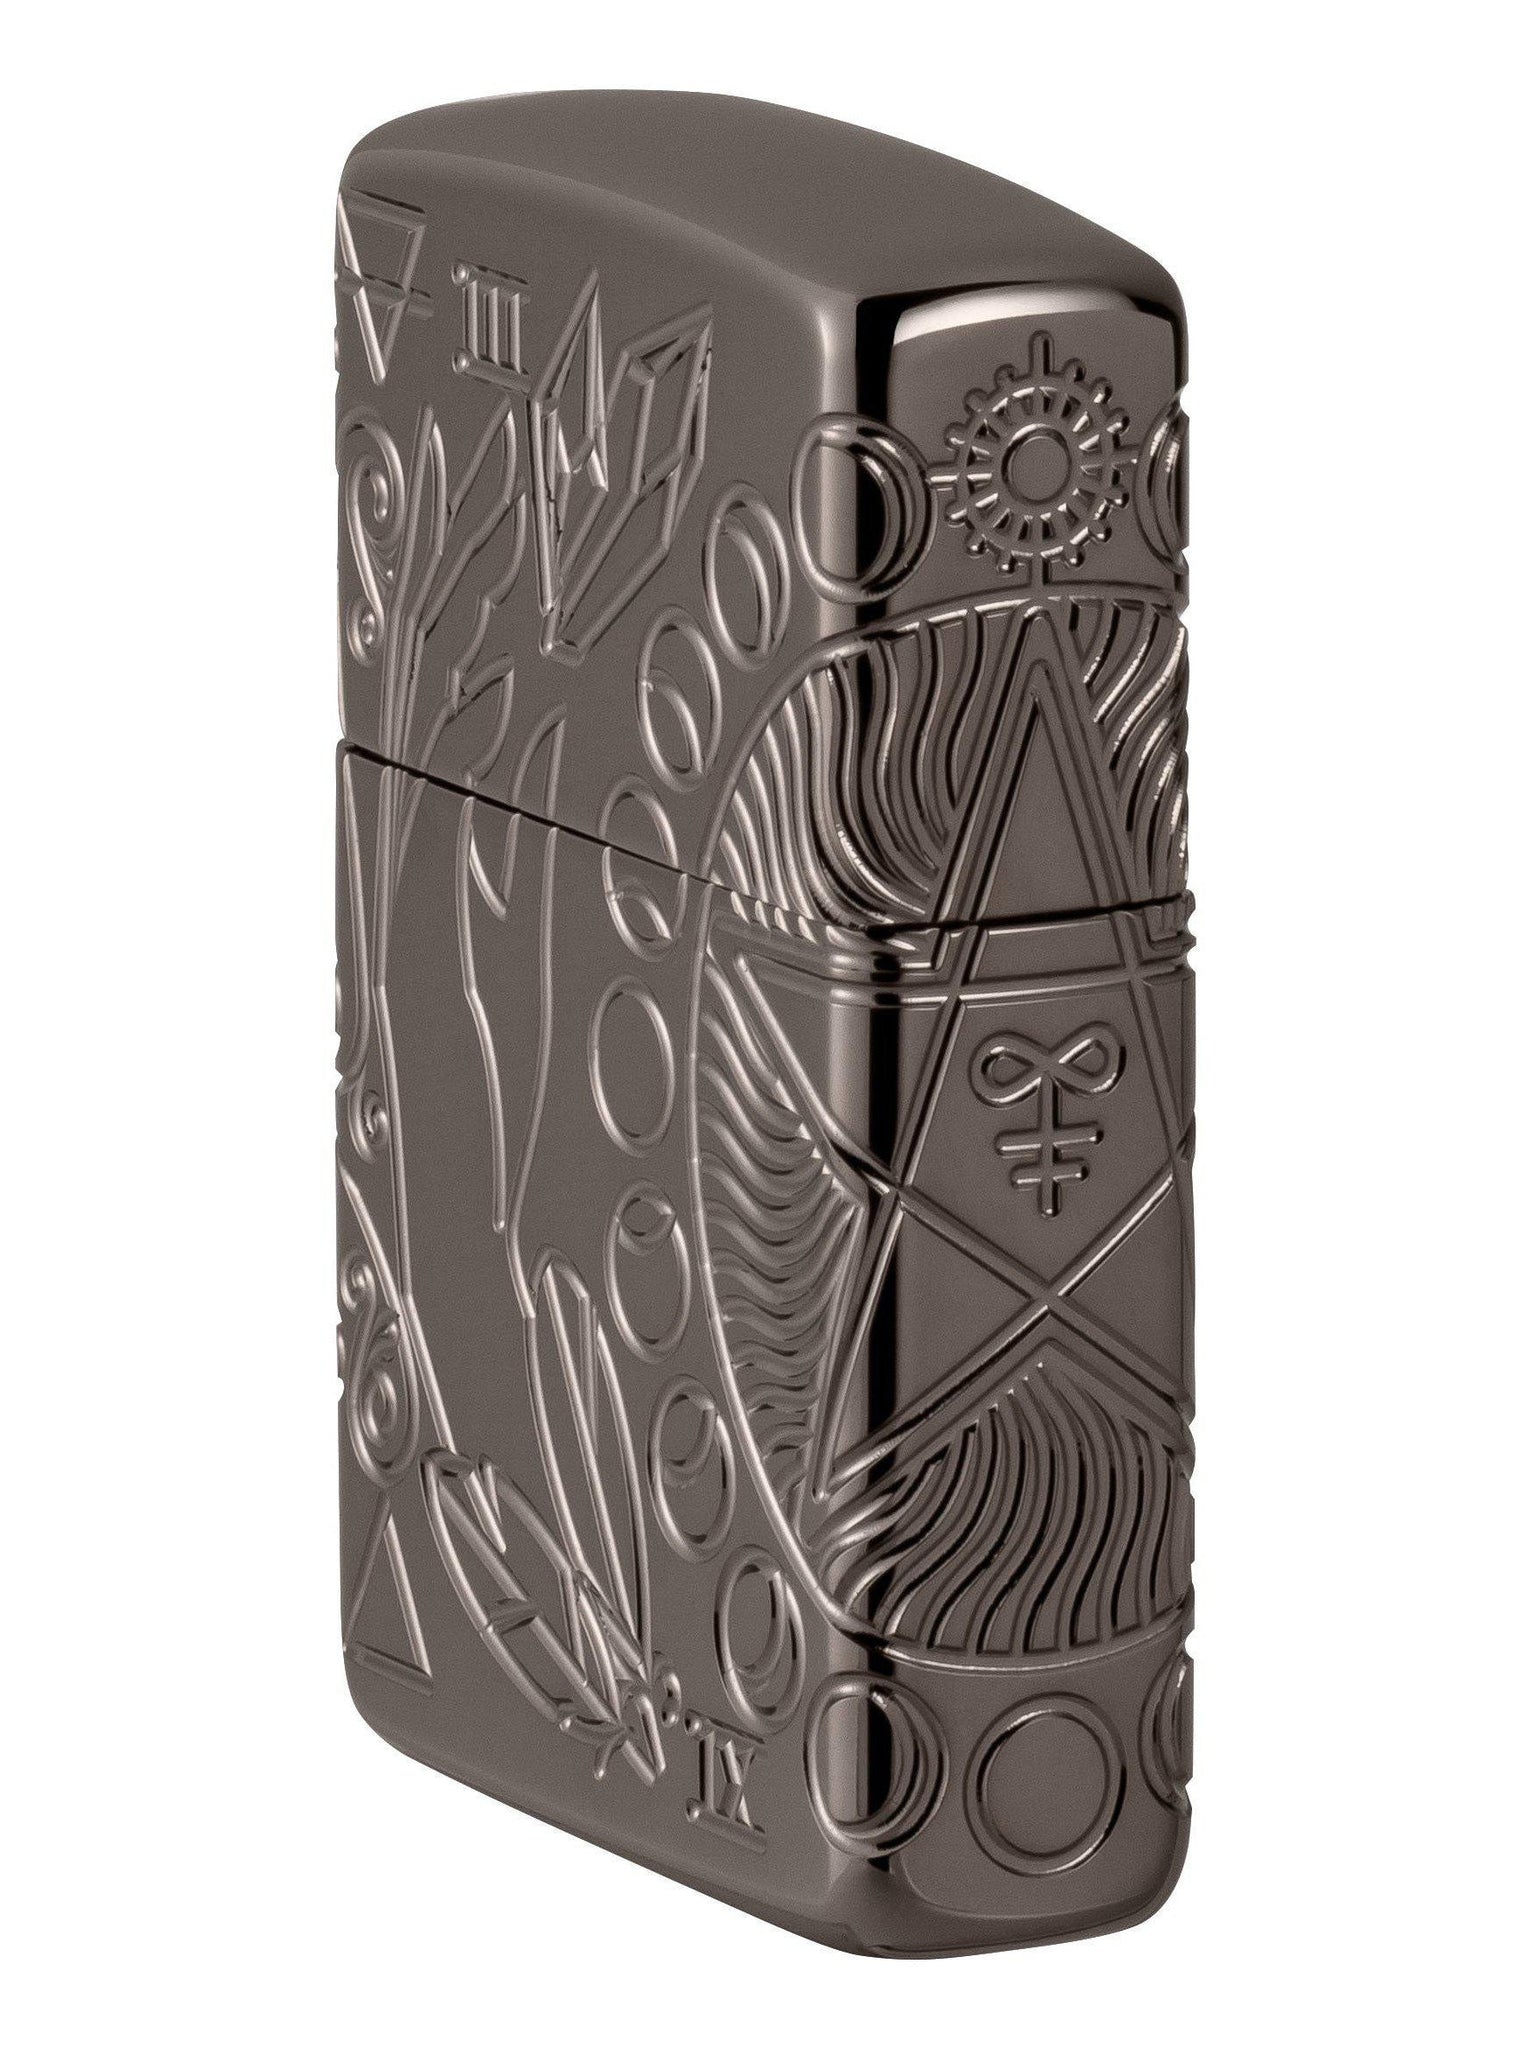 Zippo Lighter: Wicca Design, MultiCut Armor - Black Ice 49689